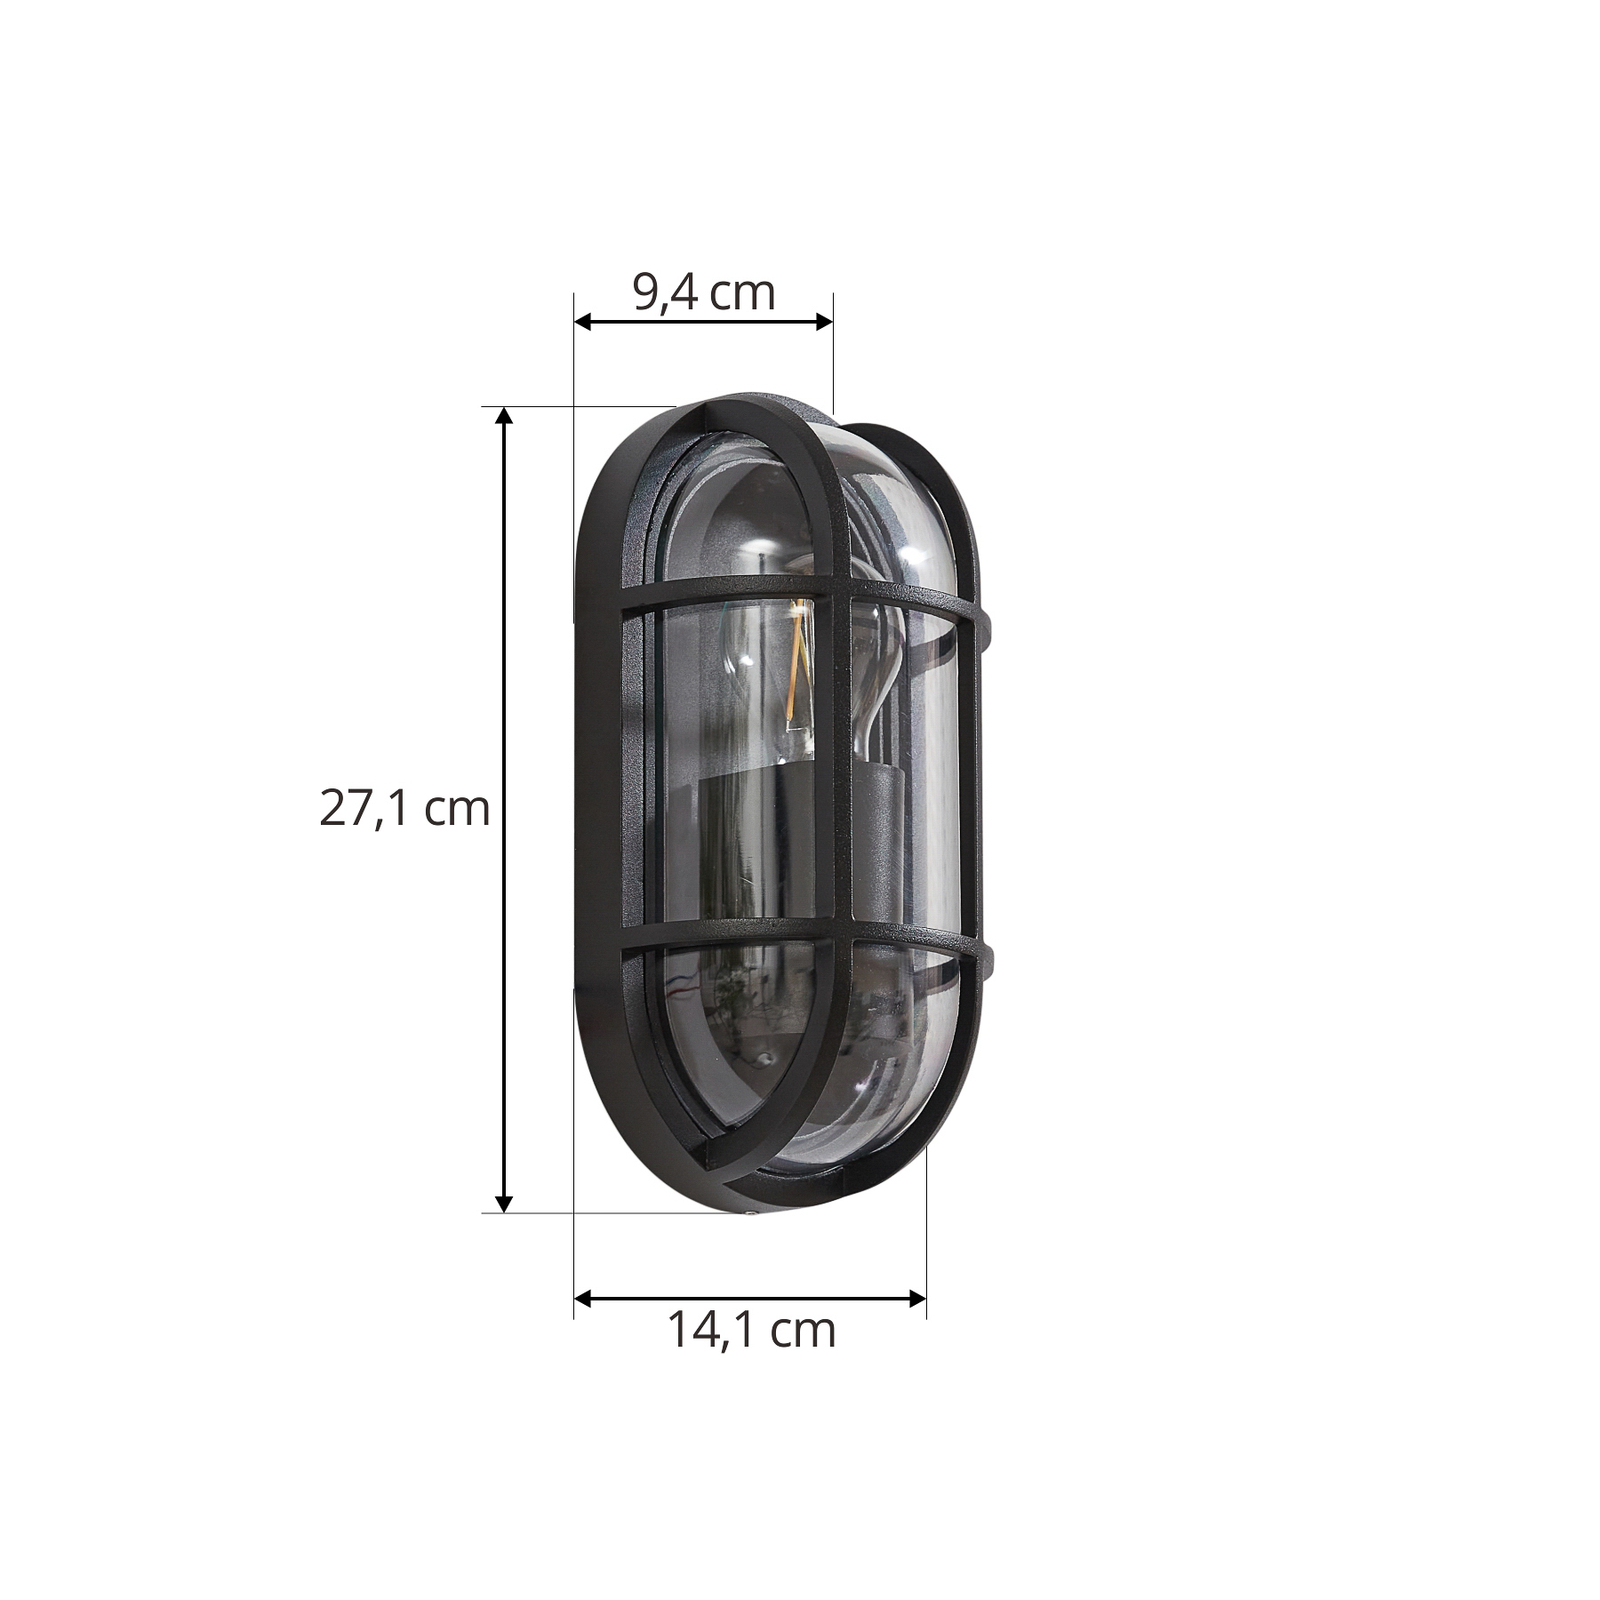 Lucande Serine udendørs væglampe, 27,1 cm, sort, aluminium